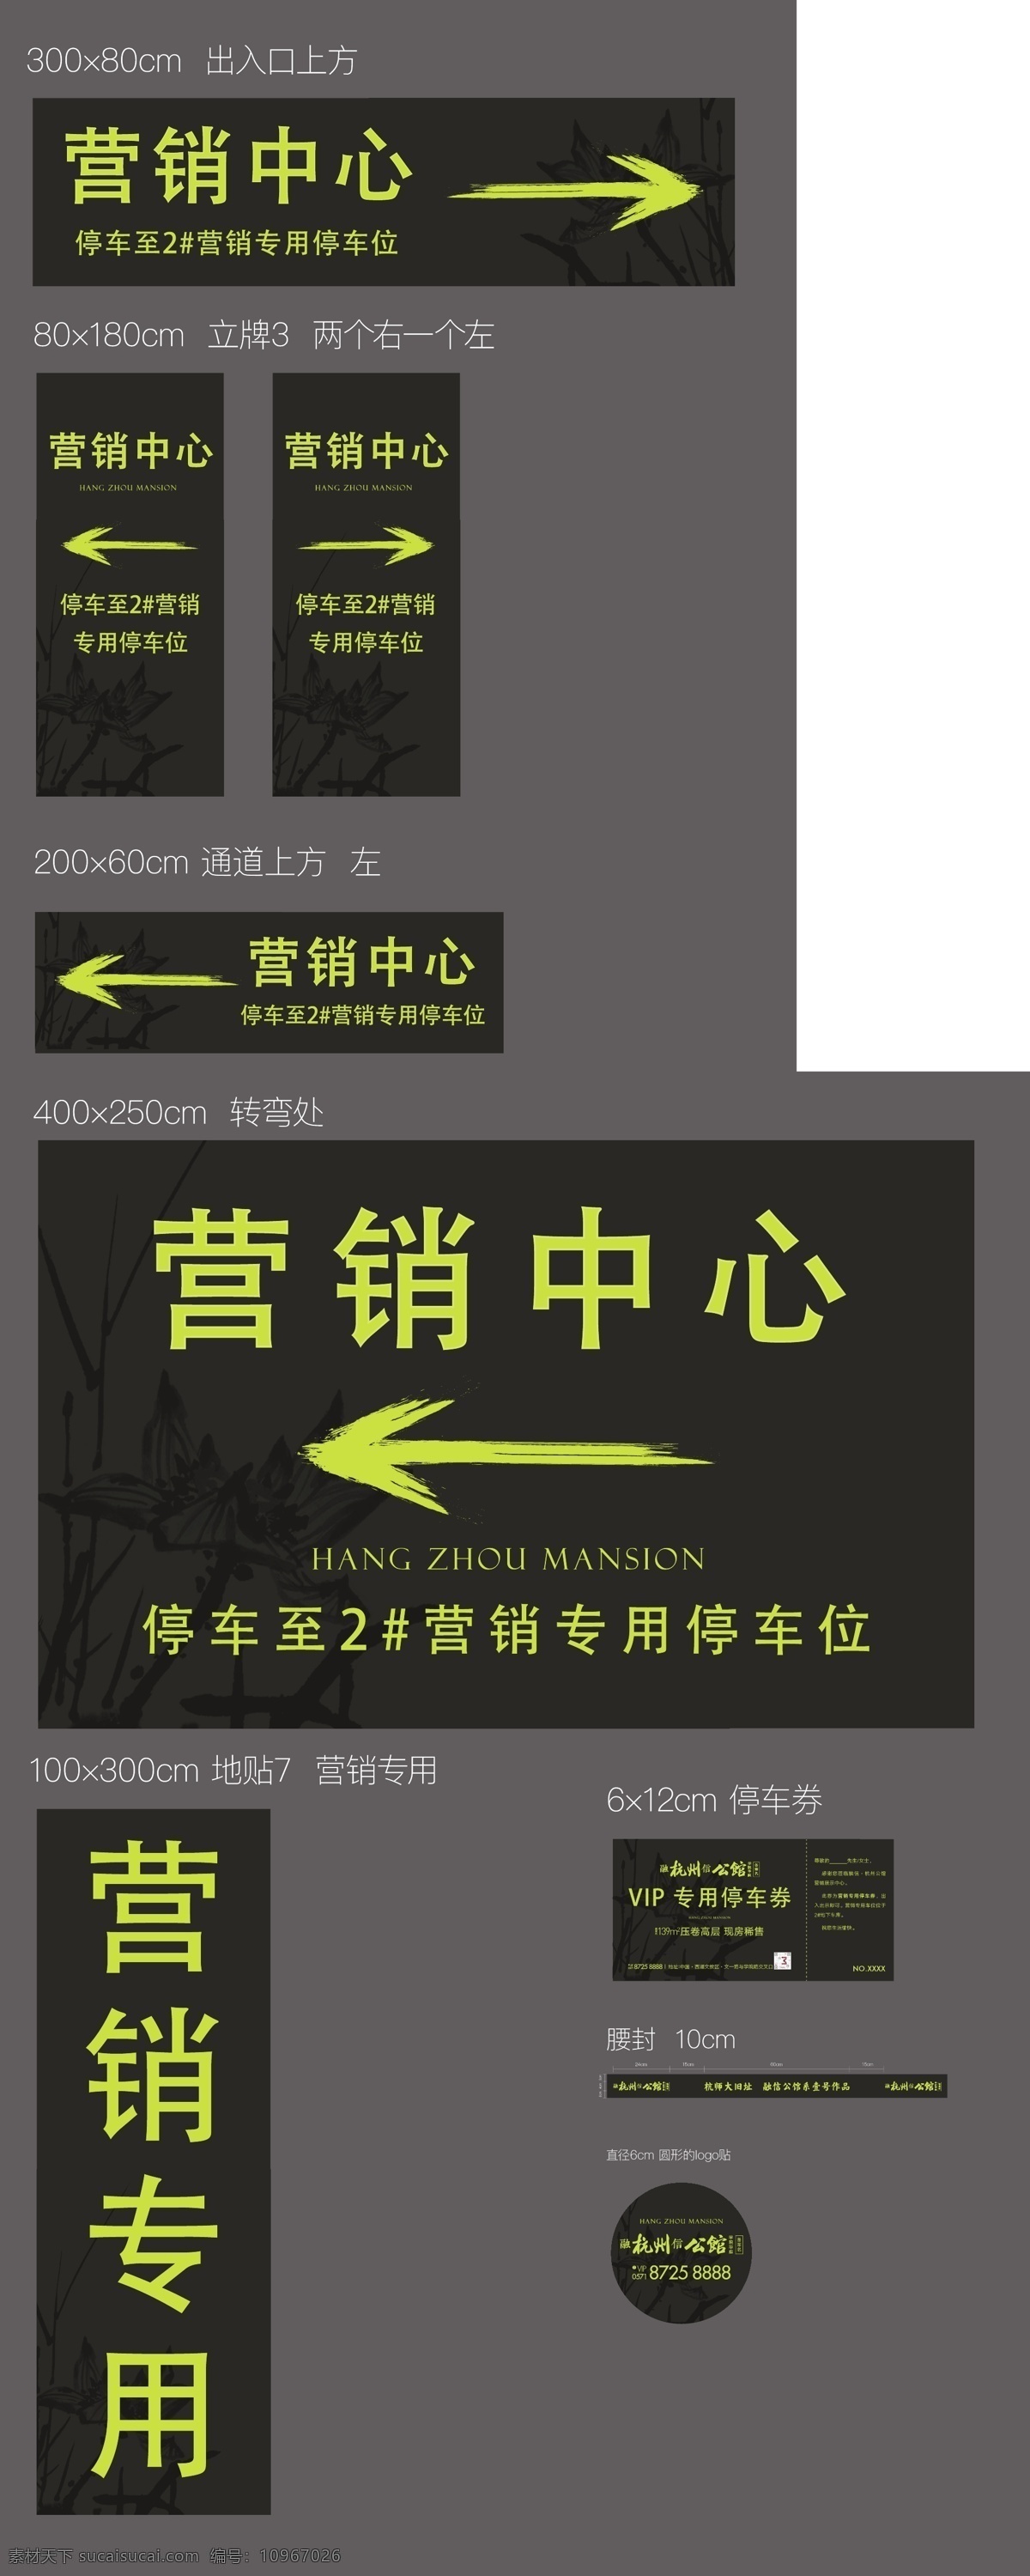 指引牌 指引 物料 销售中心 地产 指示 箭头 停车位 方向 路牌 hangzhou 公馆